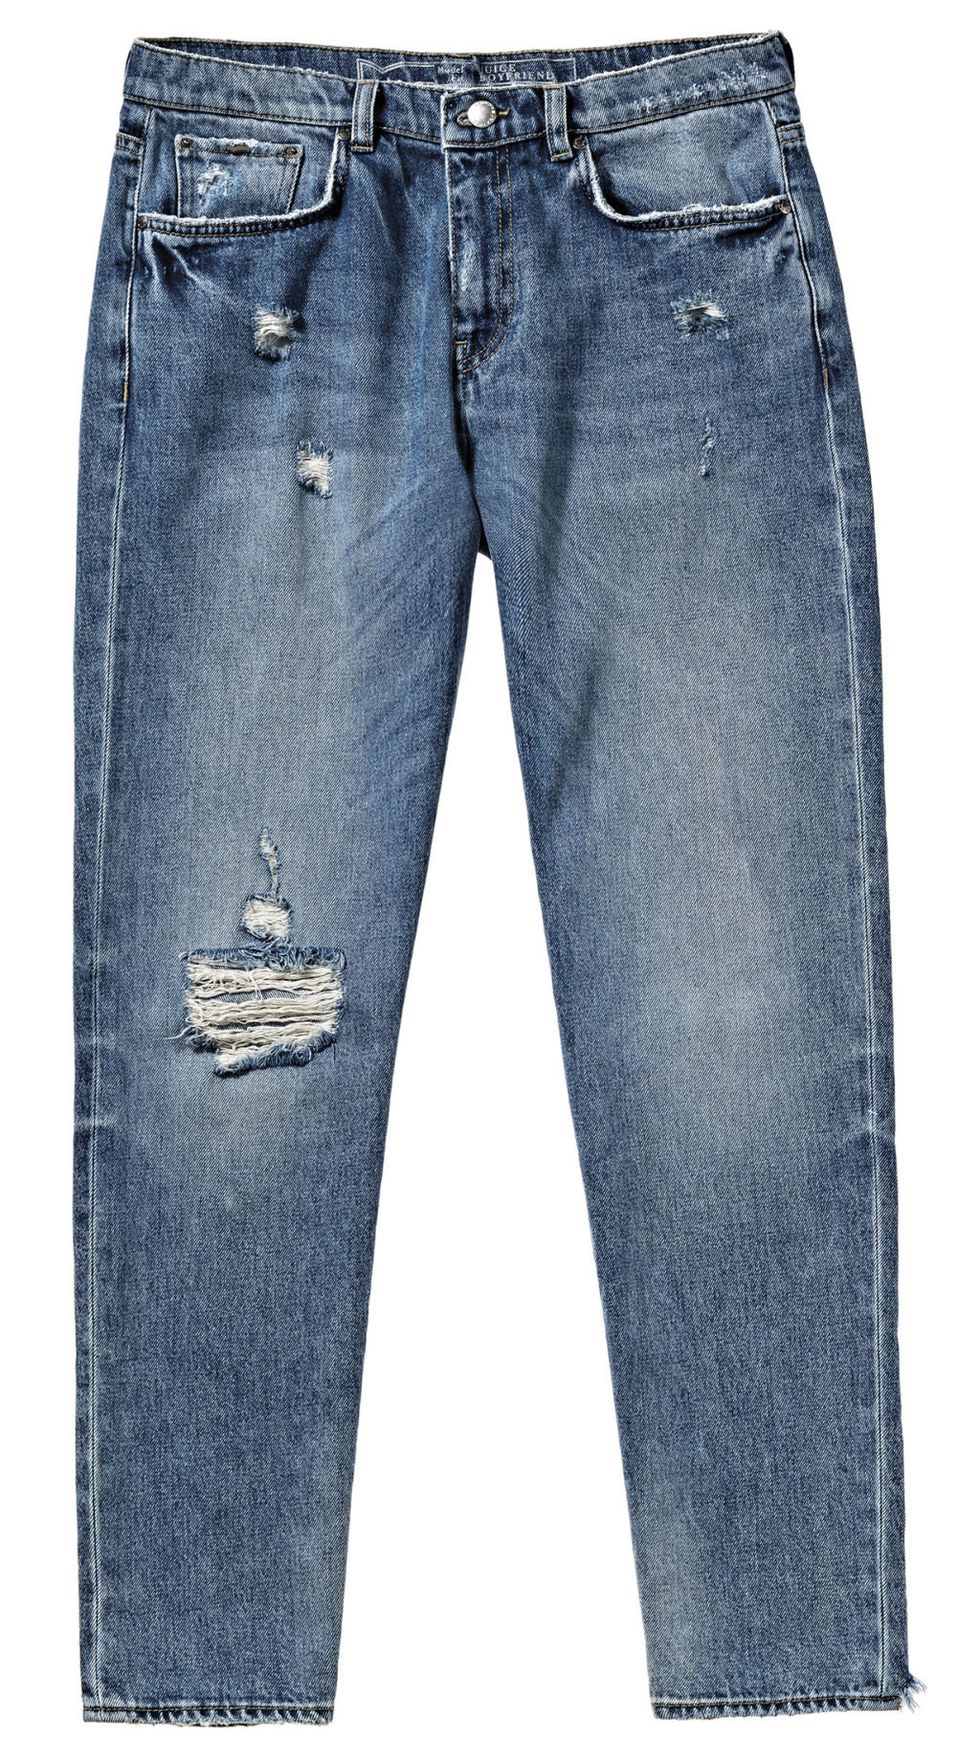 Il giubbotto di jeans è un capo davvero imprescindibile nei tuoi abbinamenti moda: sfruttalo per l'autunno con questi look facilissimi ed esaltare al massimo il tuo guardaroba.